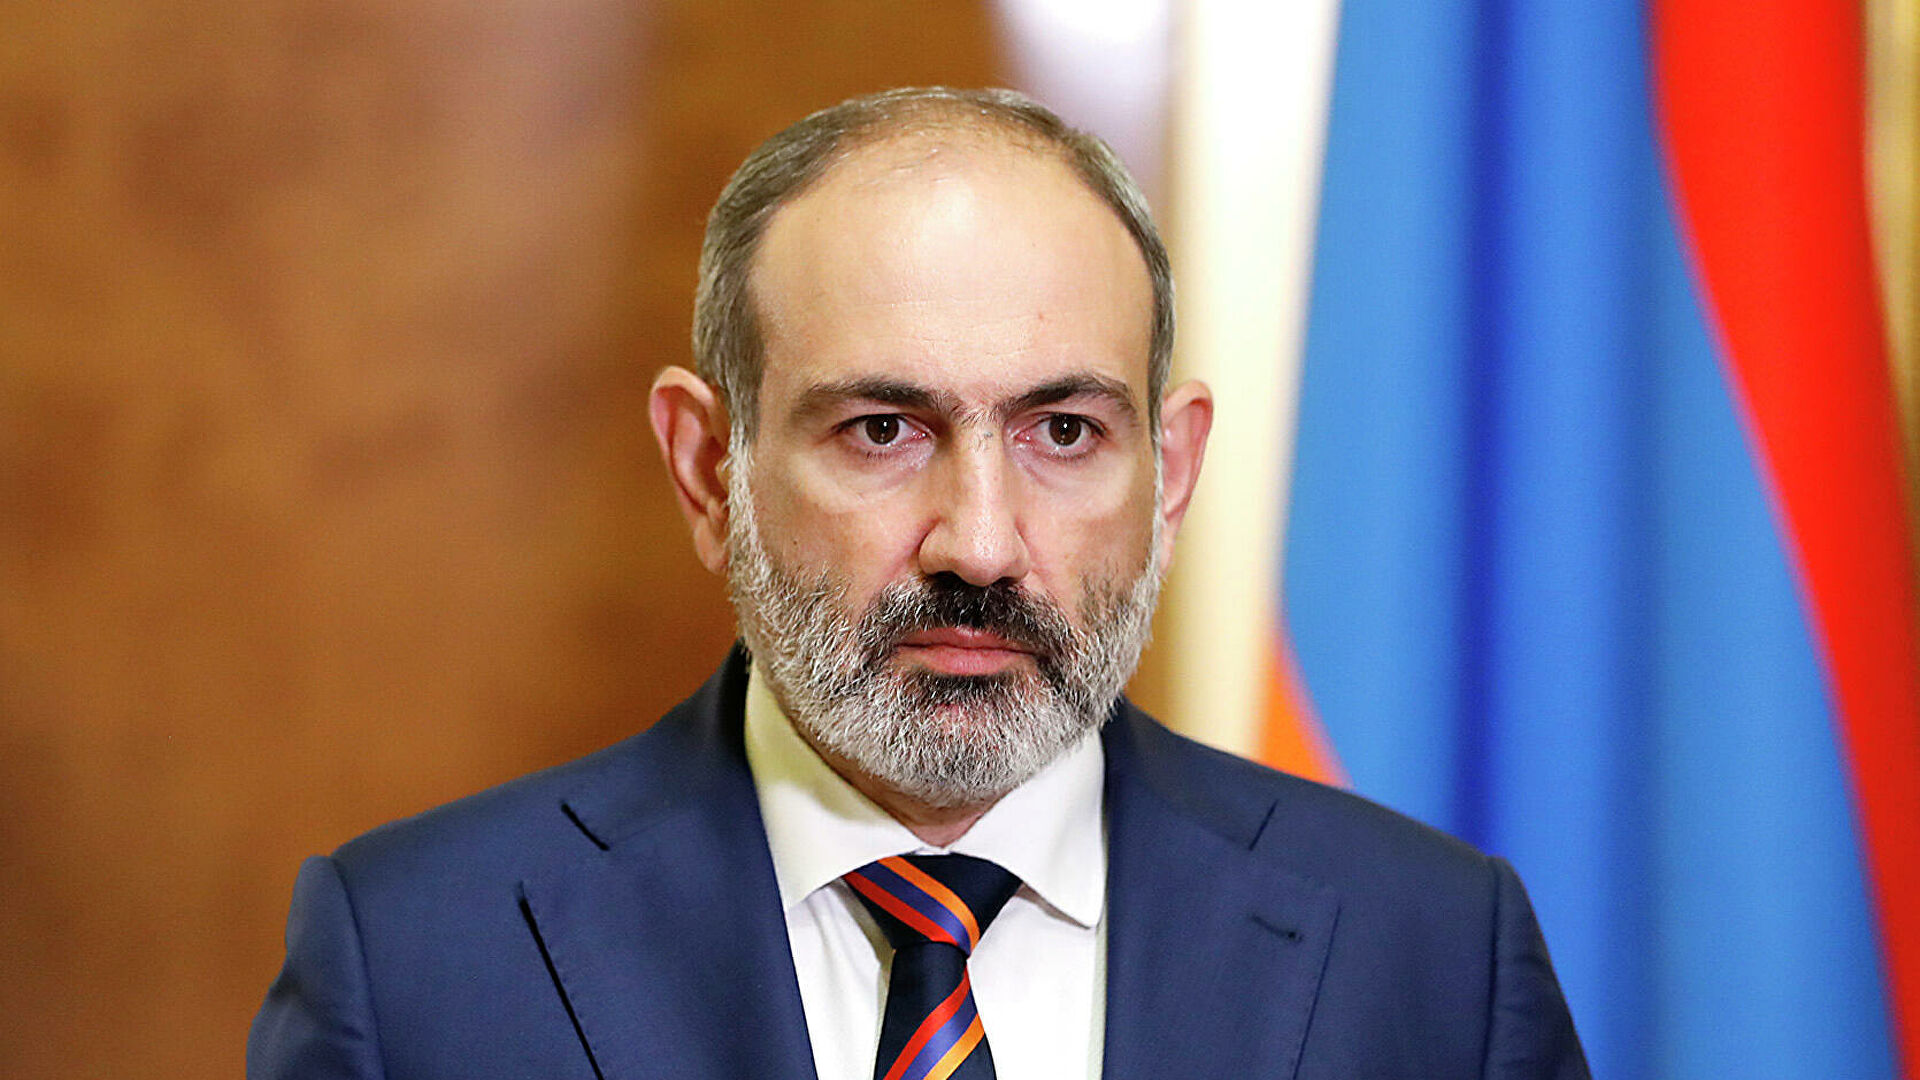 Конфликт в Карабахе: Армения заявила, что готова «к уступкам»